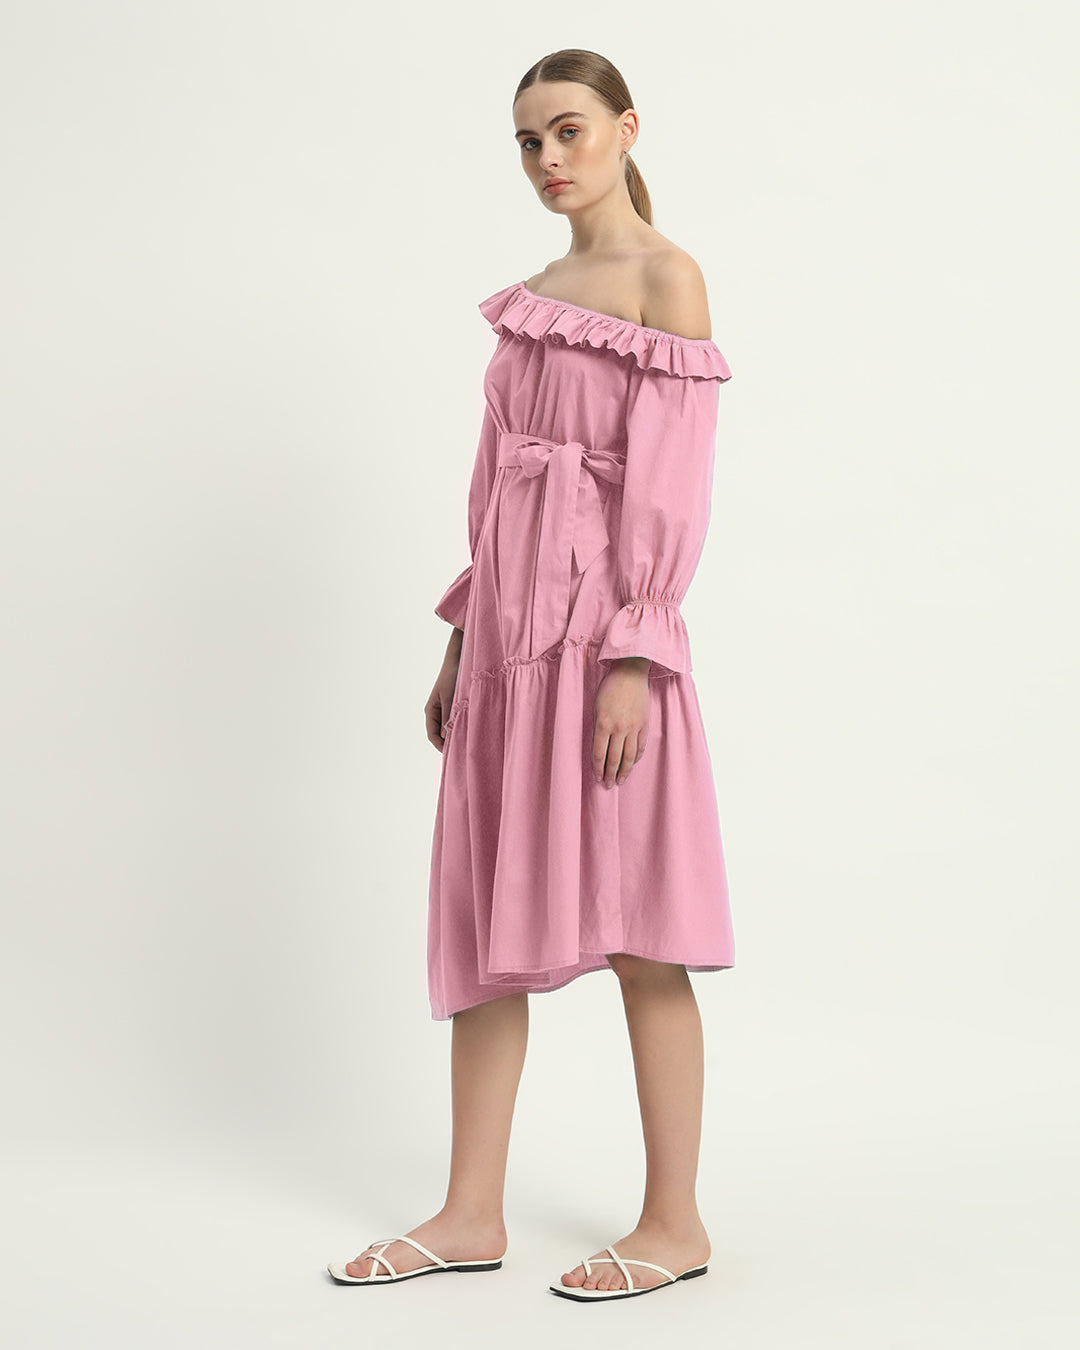 The Fondant Pink Stellata Cotton Dress